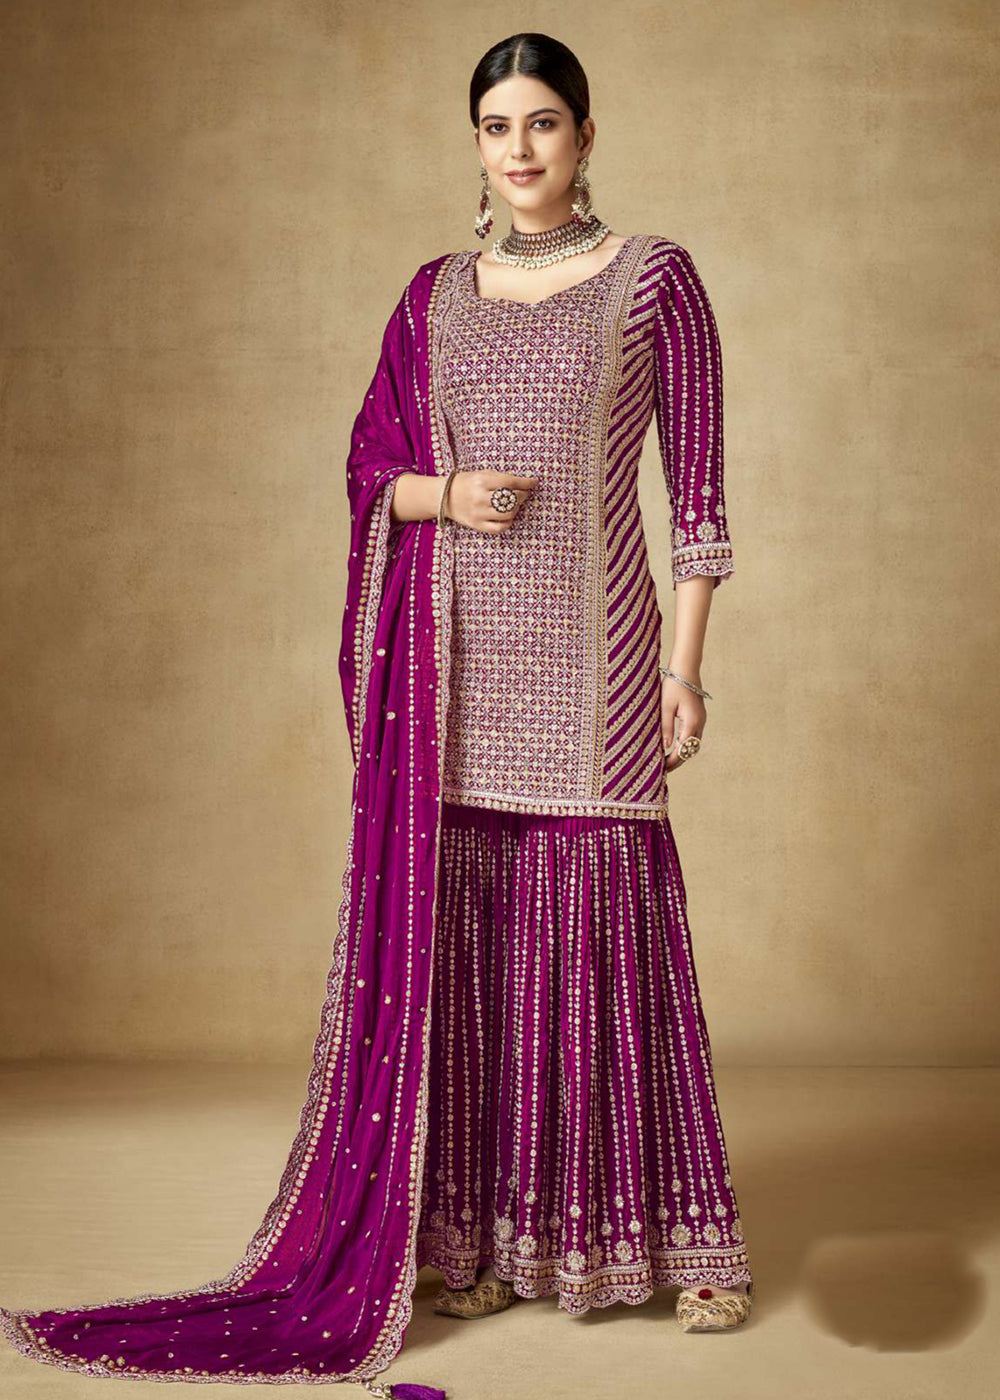 Sharara Dress Design 2021 || #Sharara #Suit #Design 💝 | Designer dresses,  Fashion, Dress